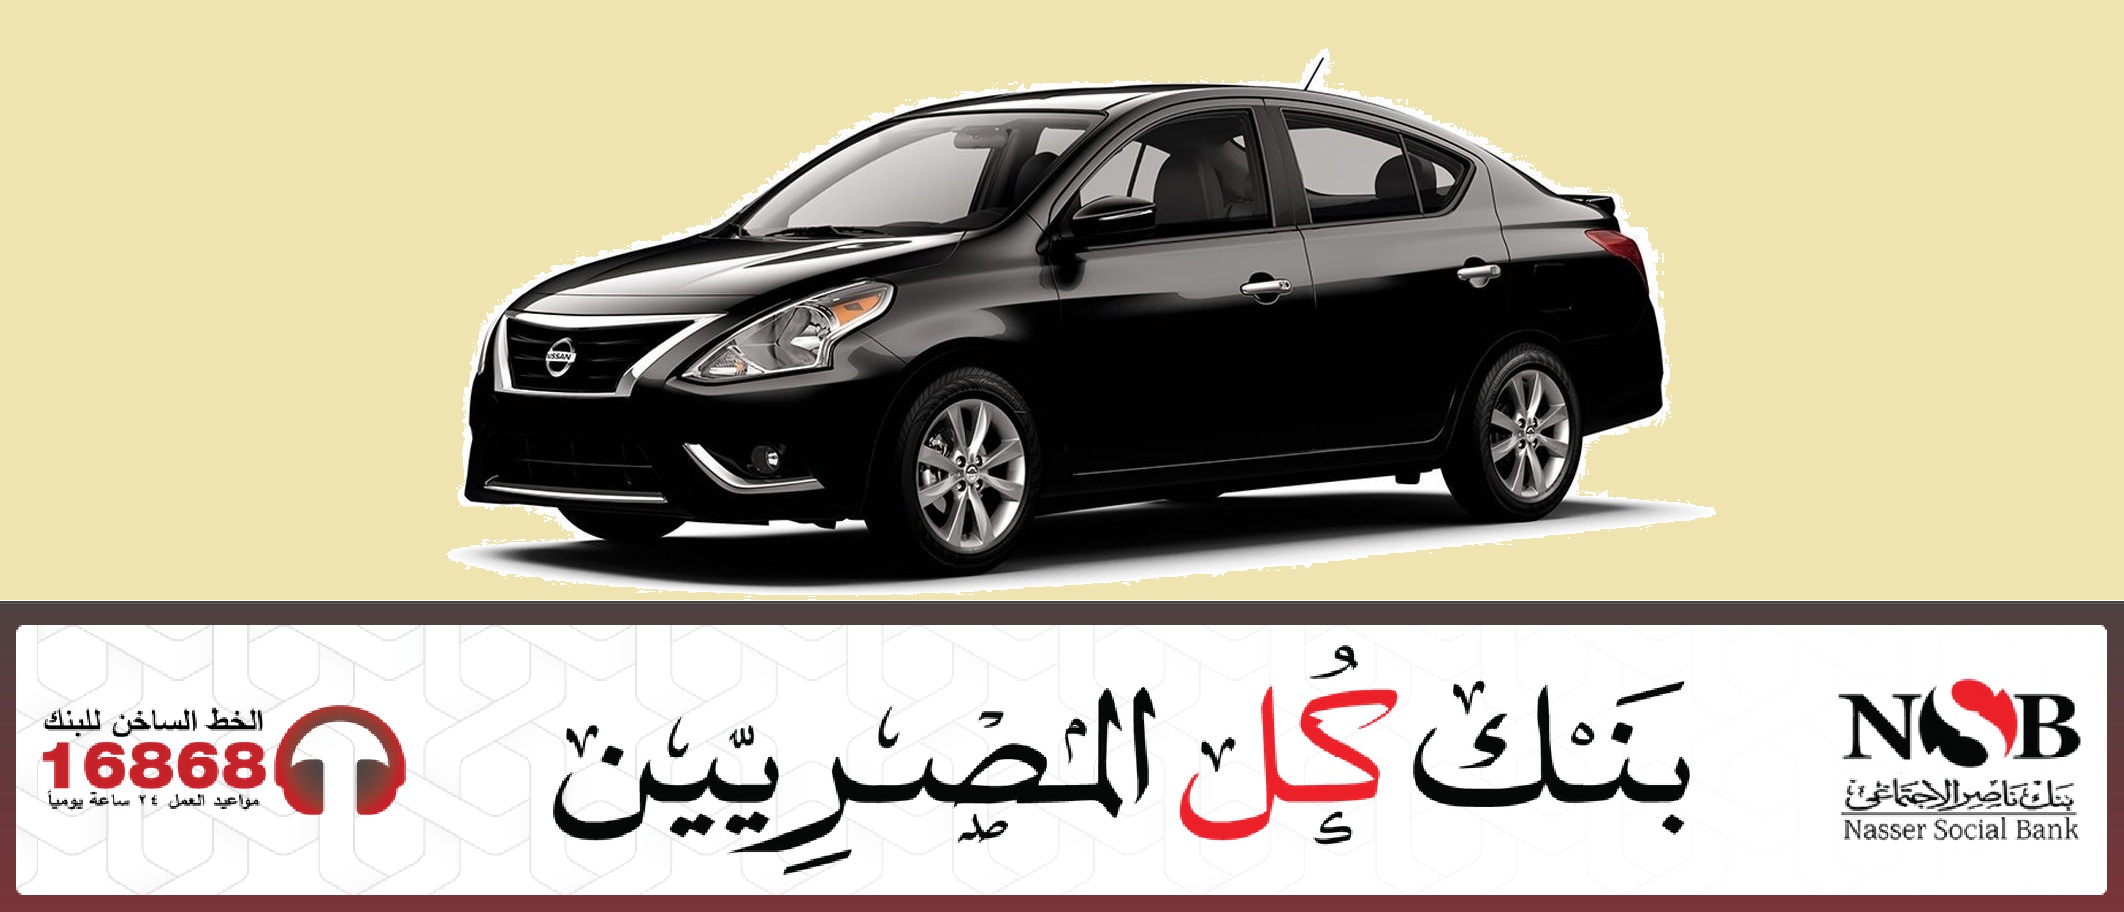 بدون مقدم وبدون حظر بيع تعرف علي تفاصيل قرض السيارة من بنك ناصر 2020